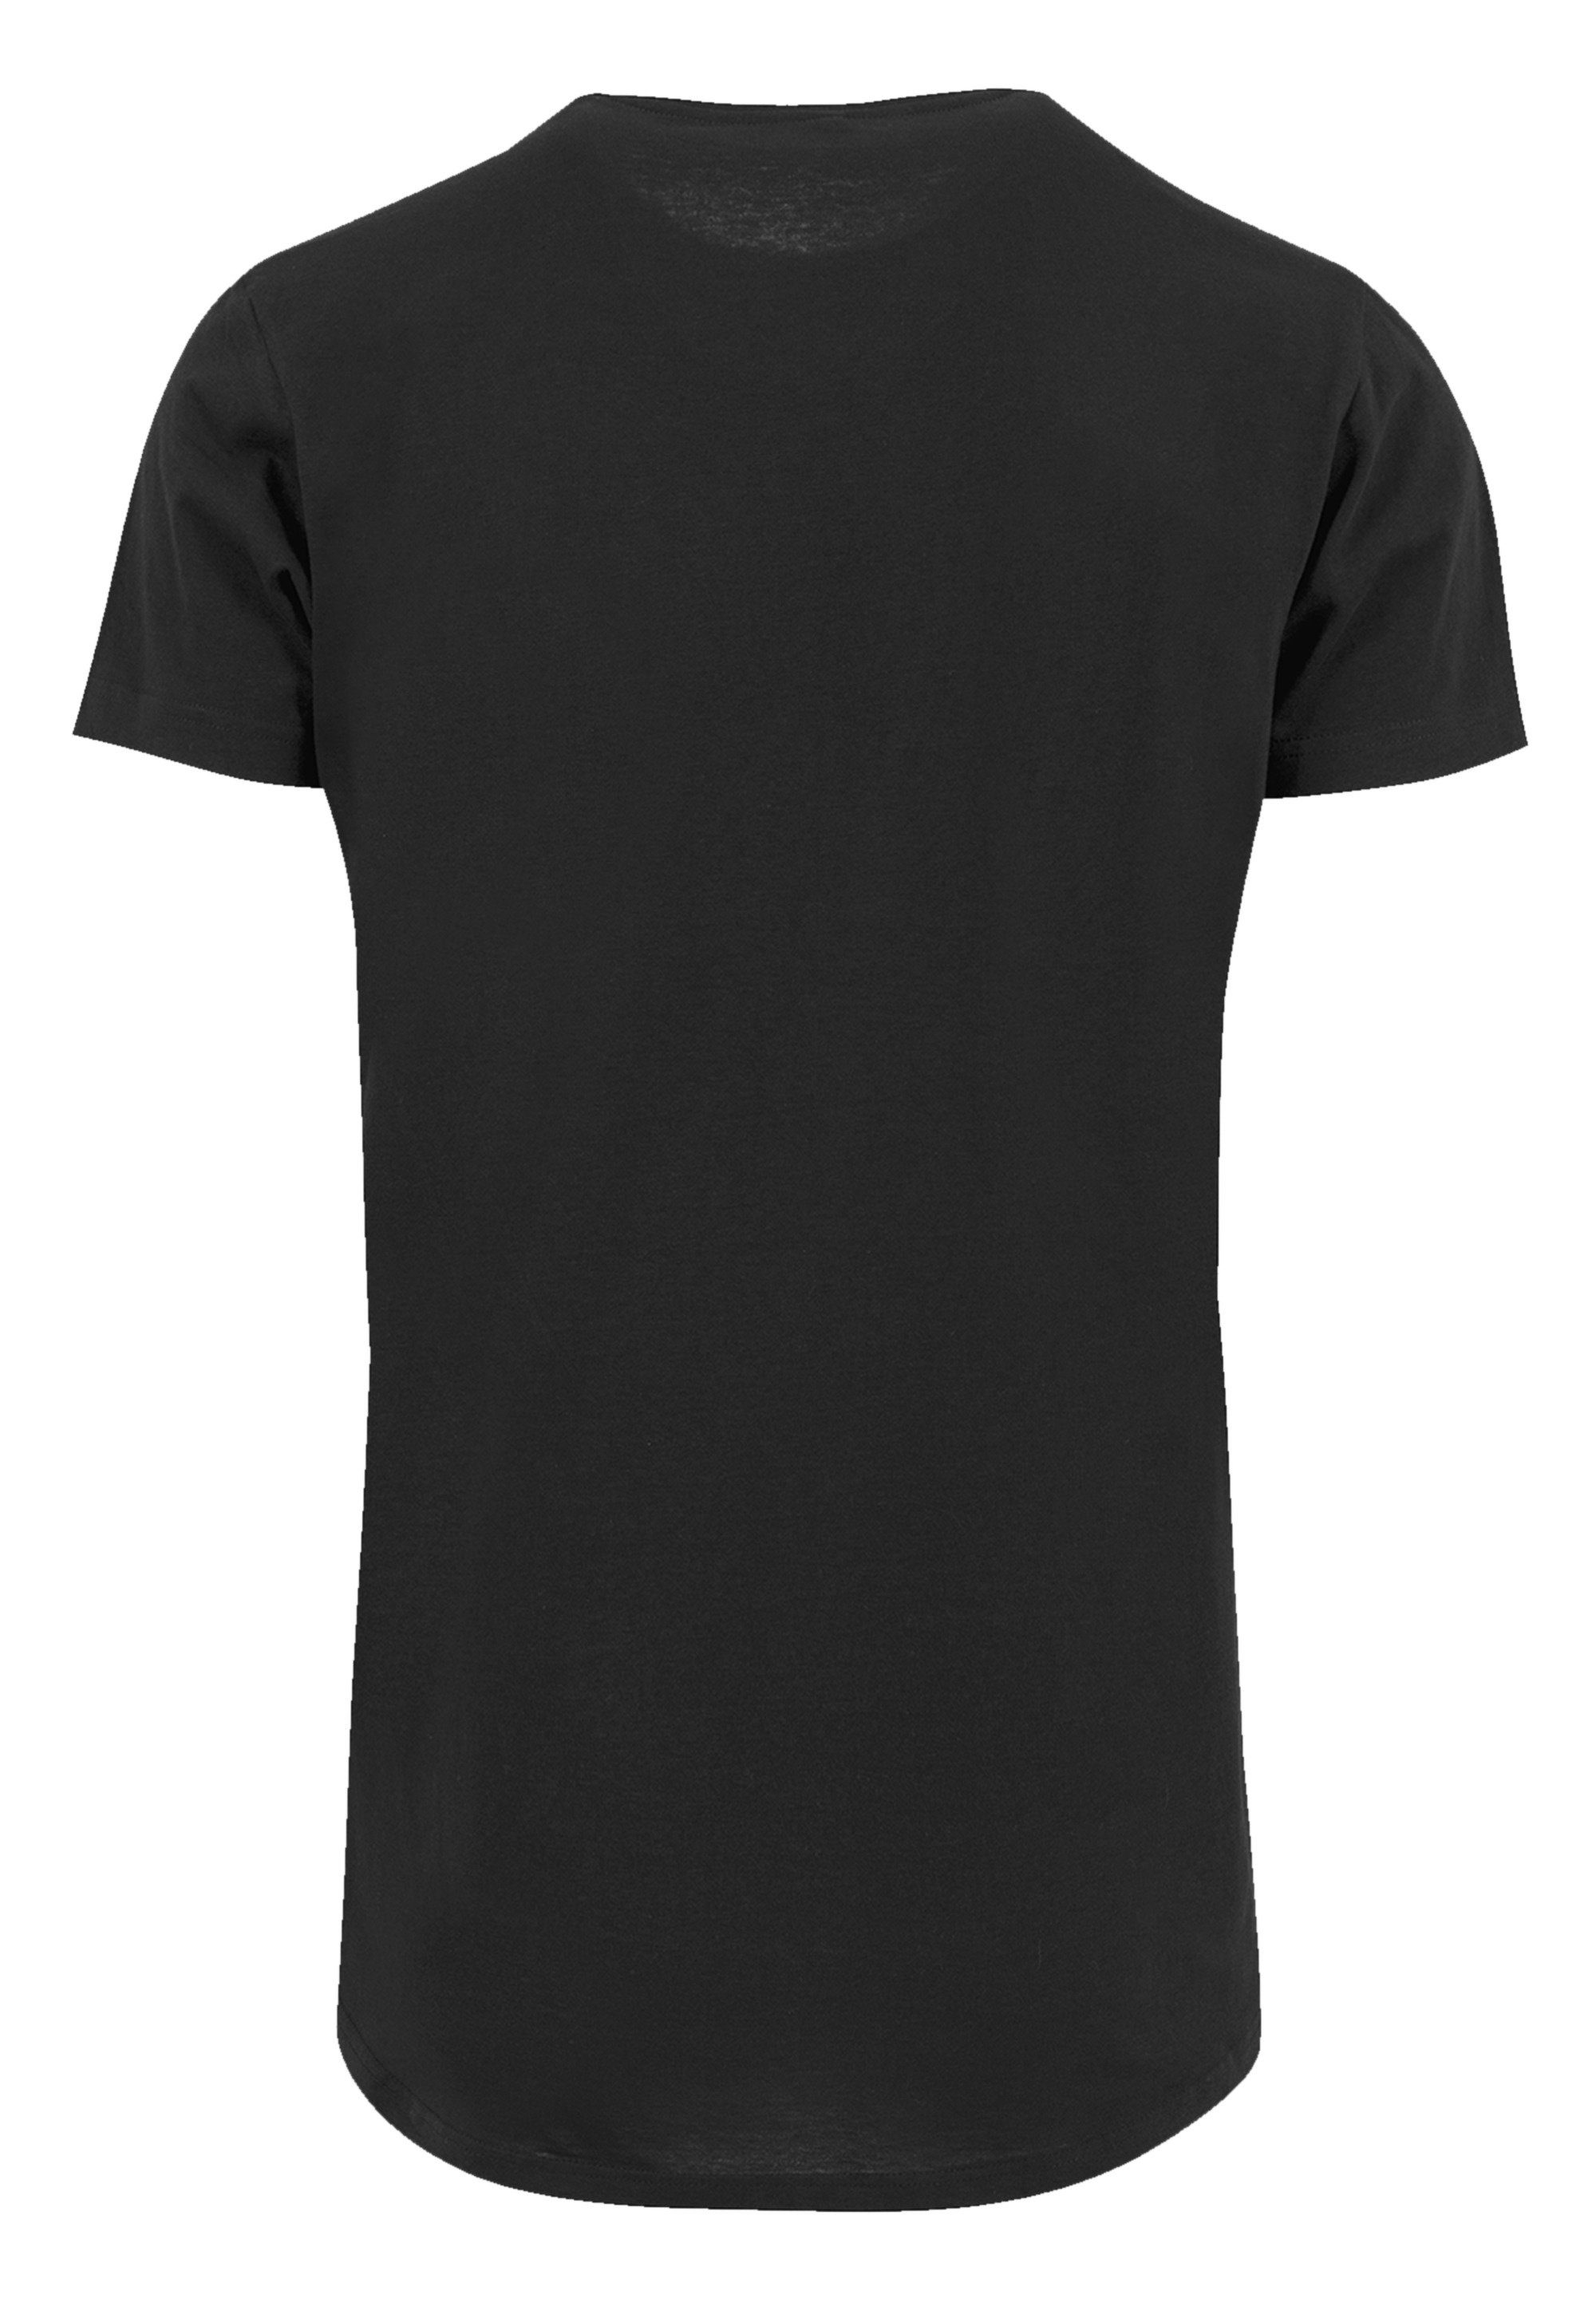 F4NT4STIC SIZE Pastel Logo PLUS Print Joplin schwarz Janis T-Shirt